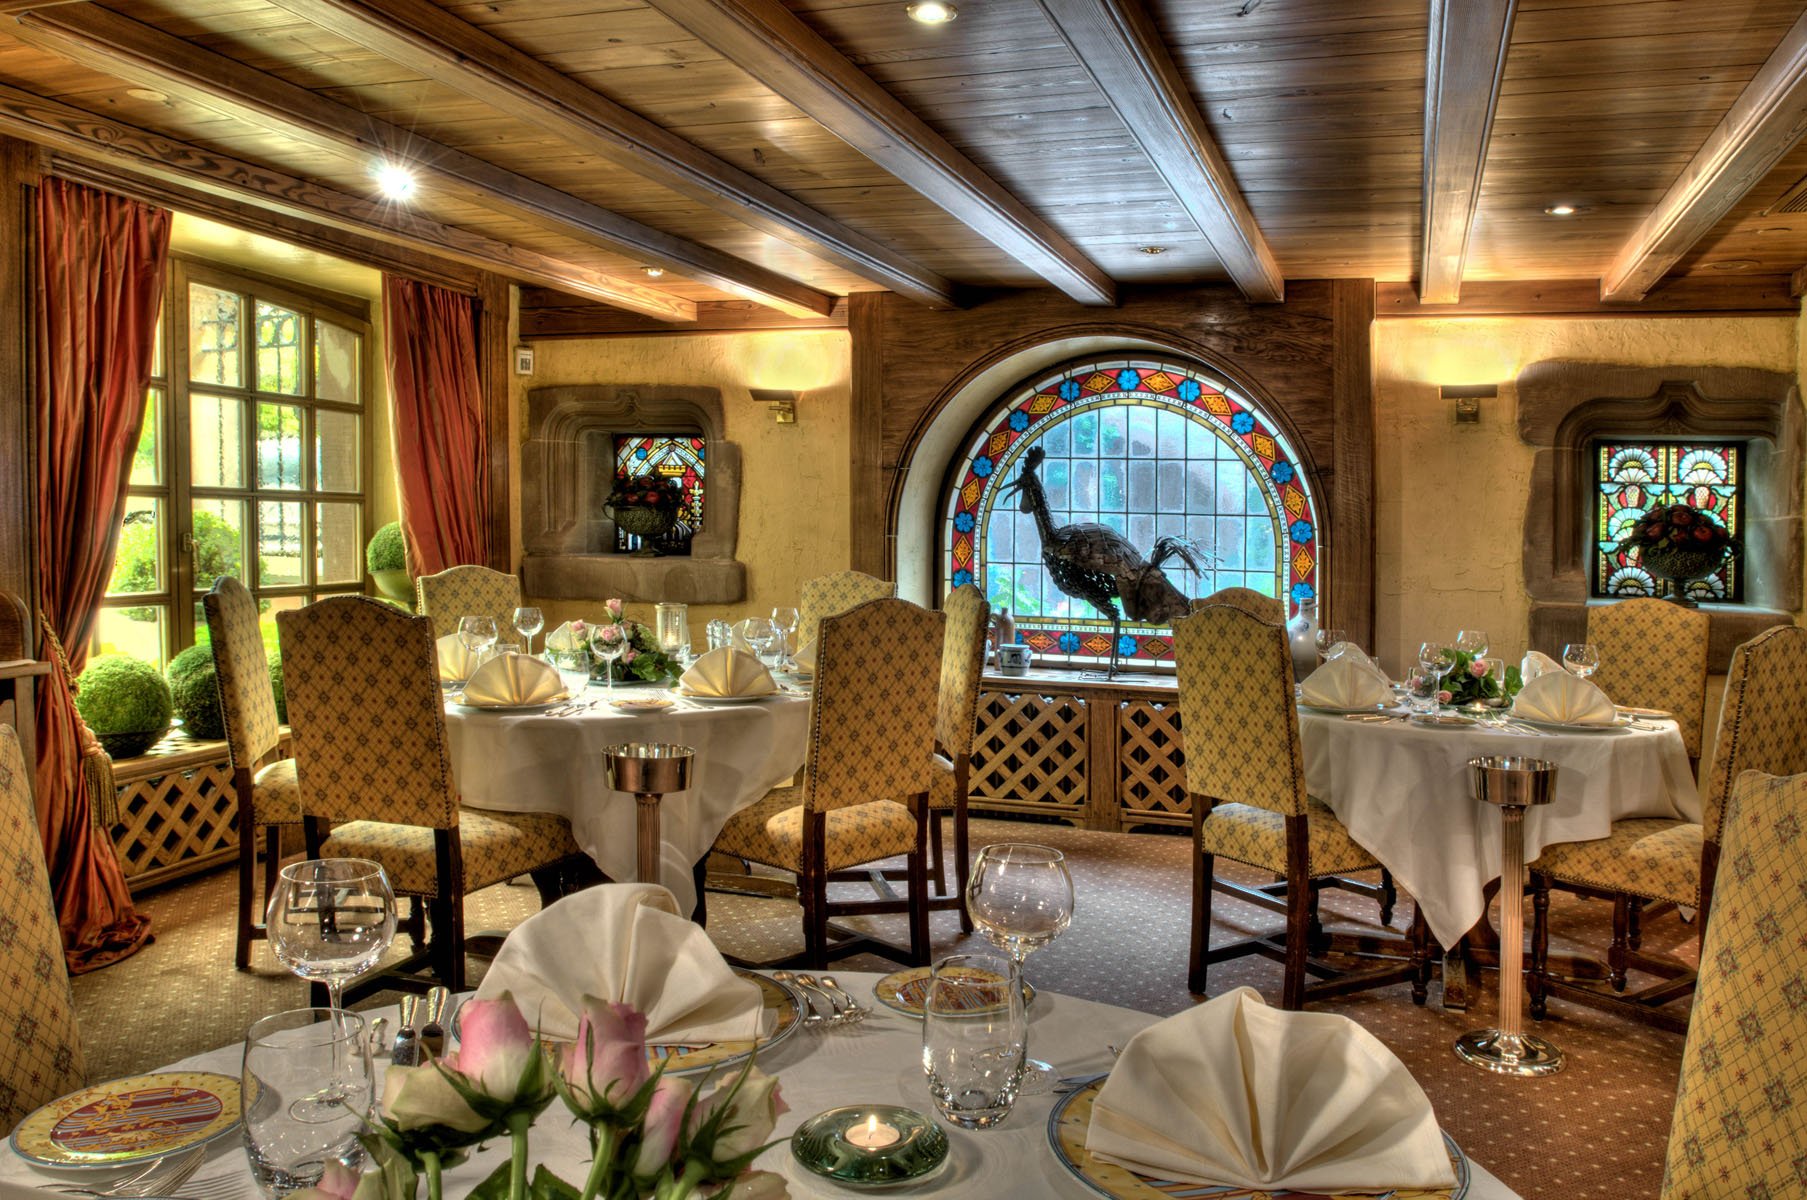 Hôtel restaurant avec SPA dans la région Alsace